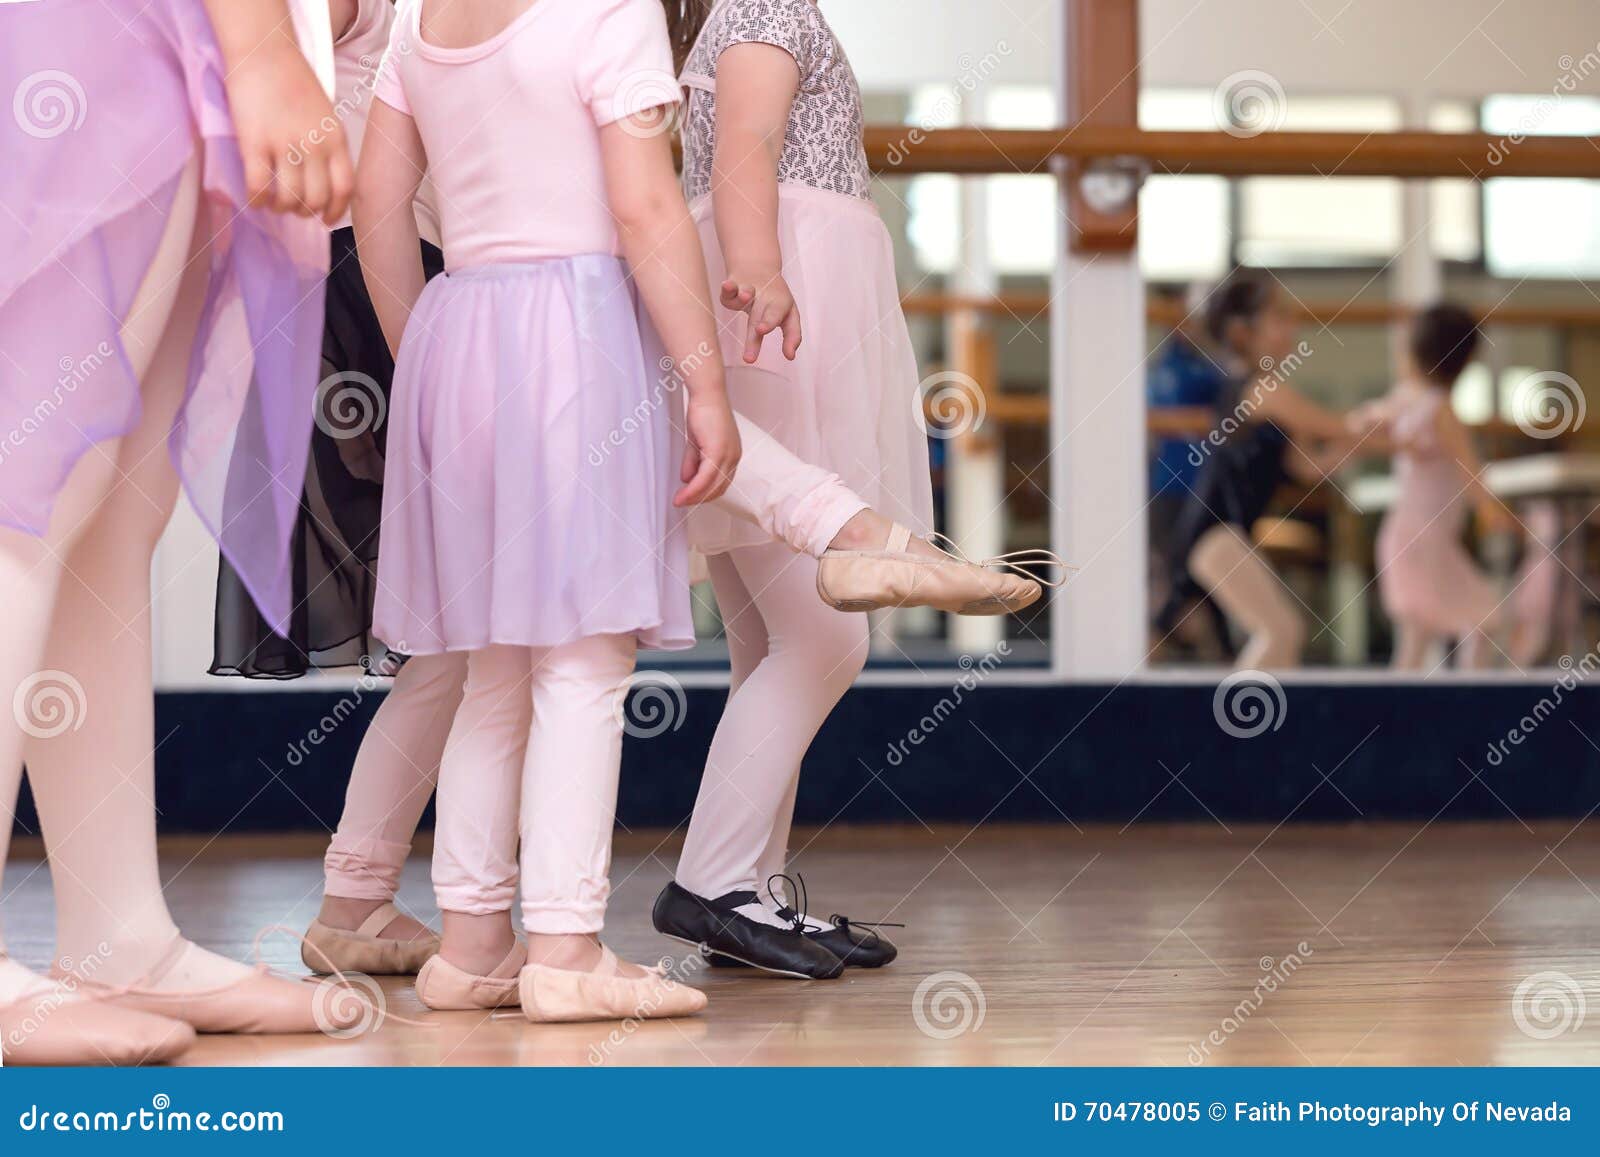 little girls ballet slippers